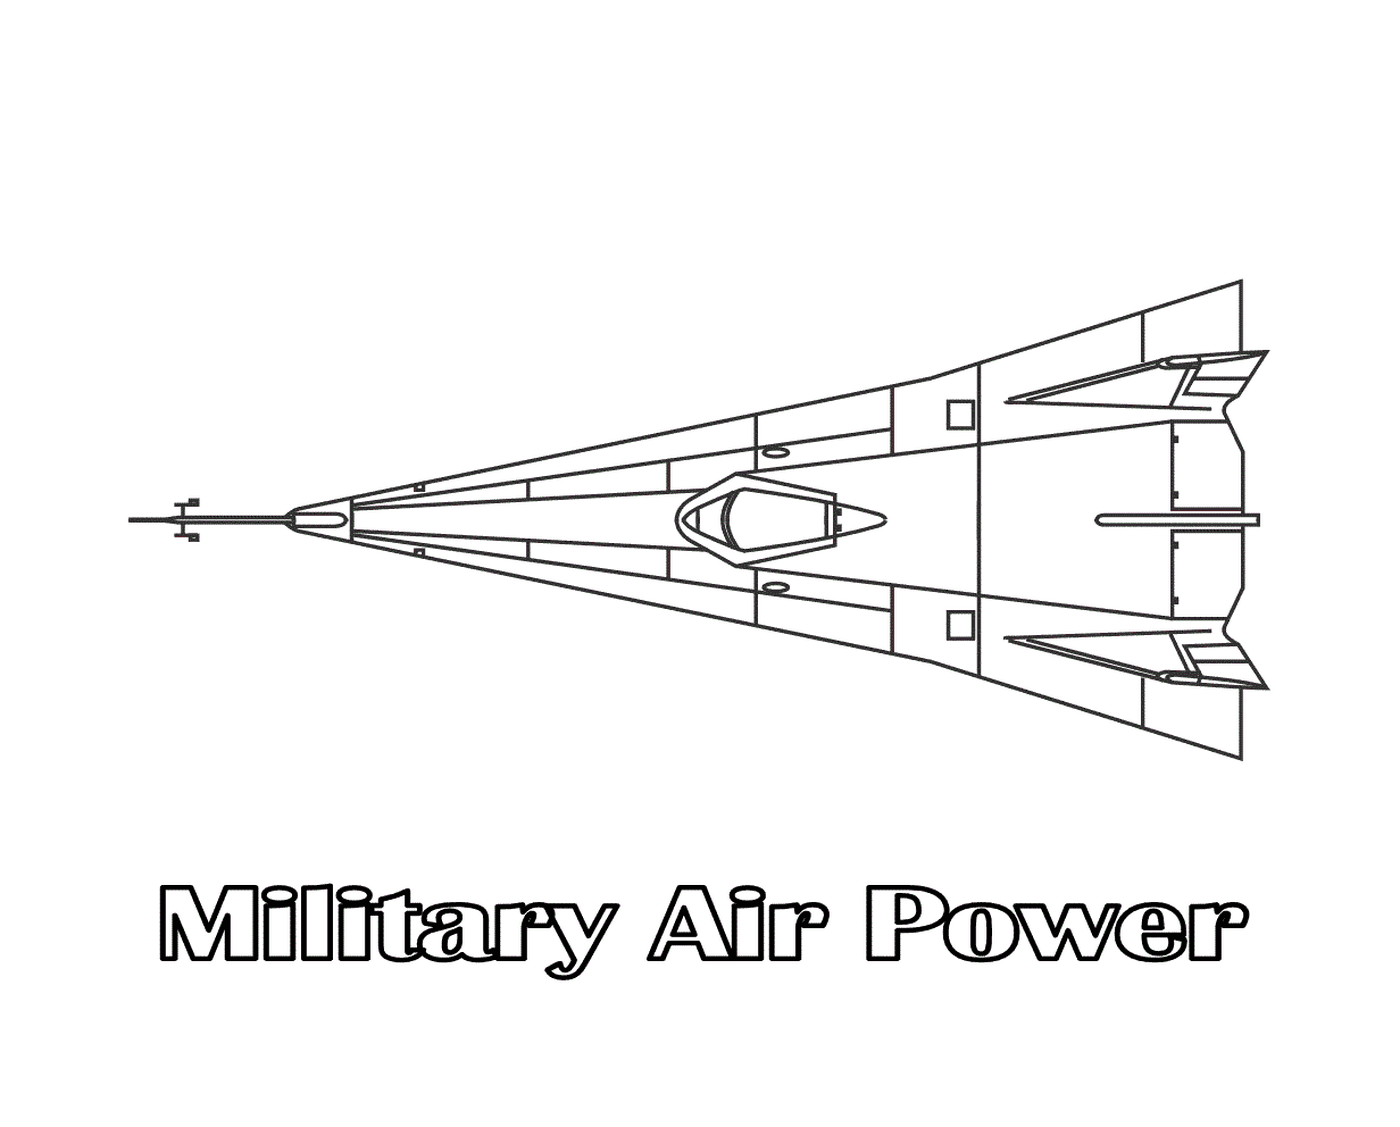  A military airpower plane 